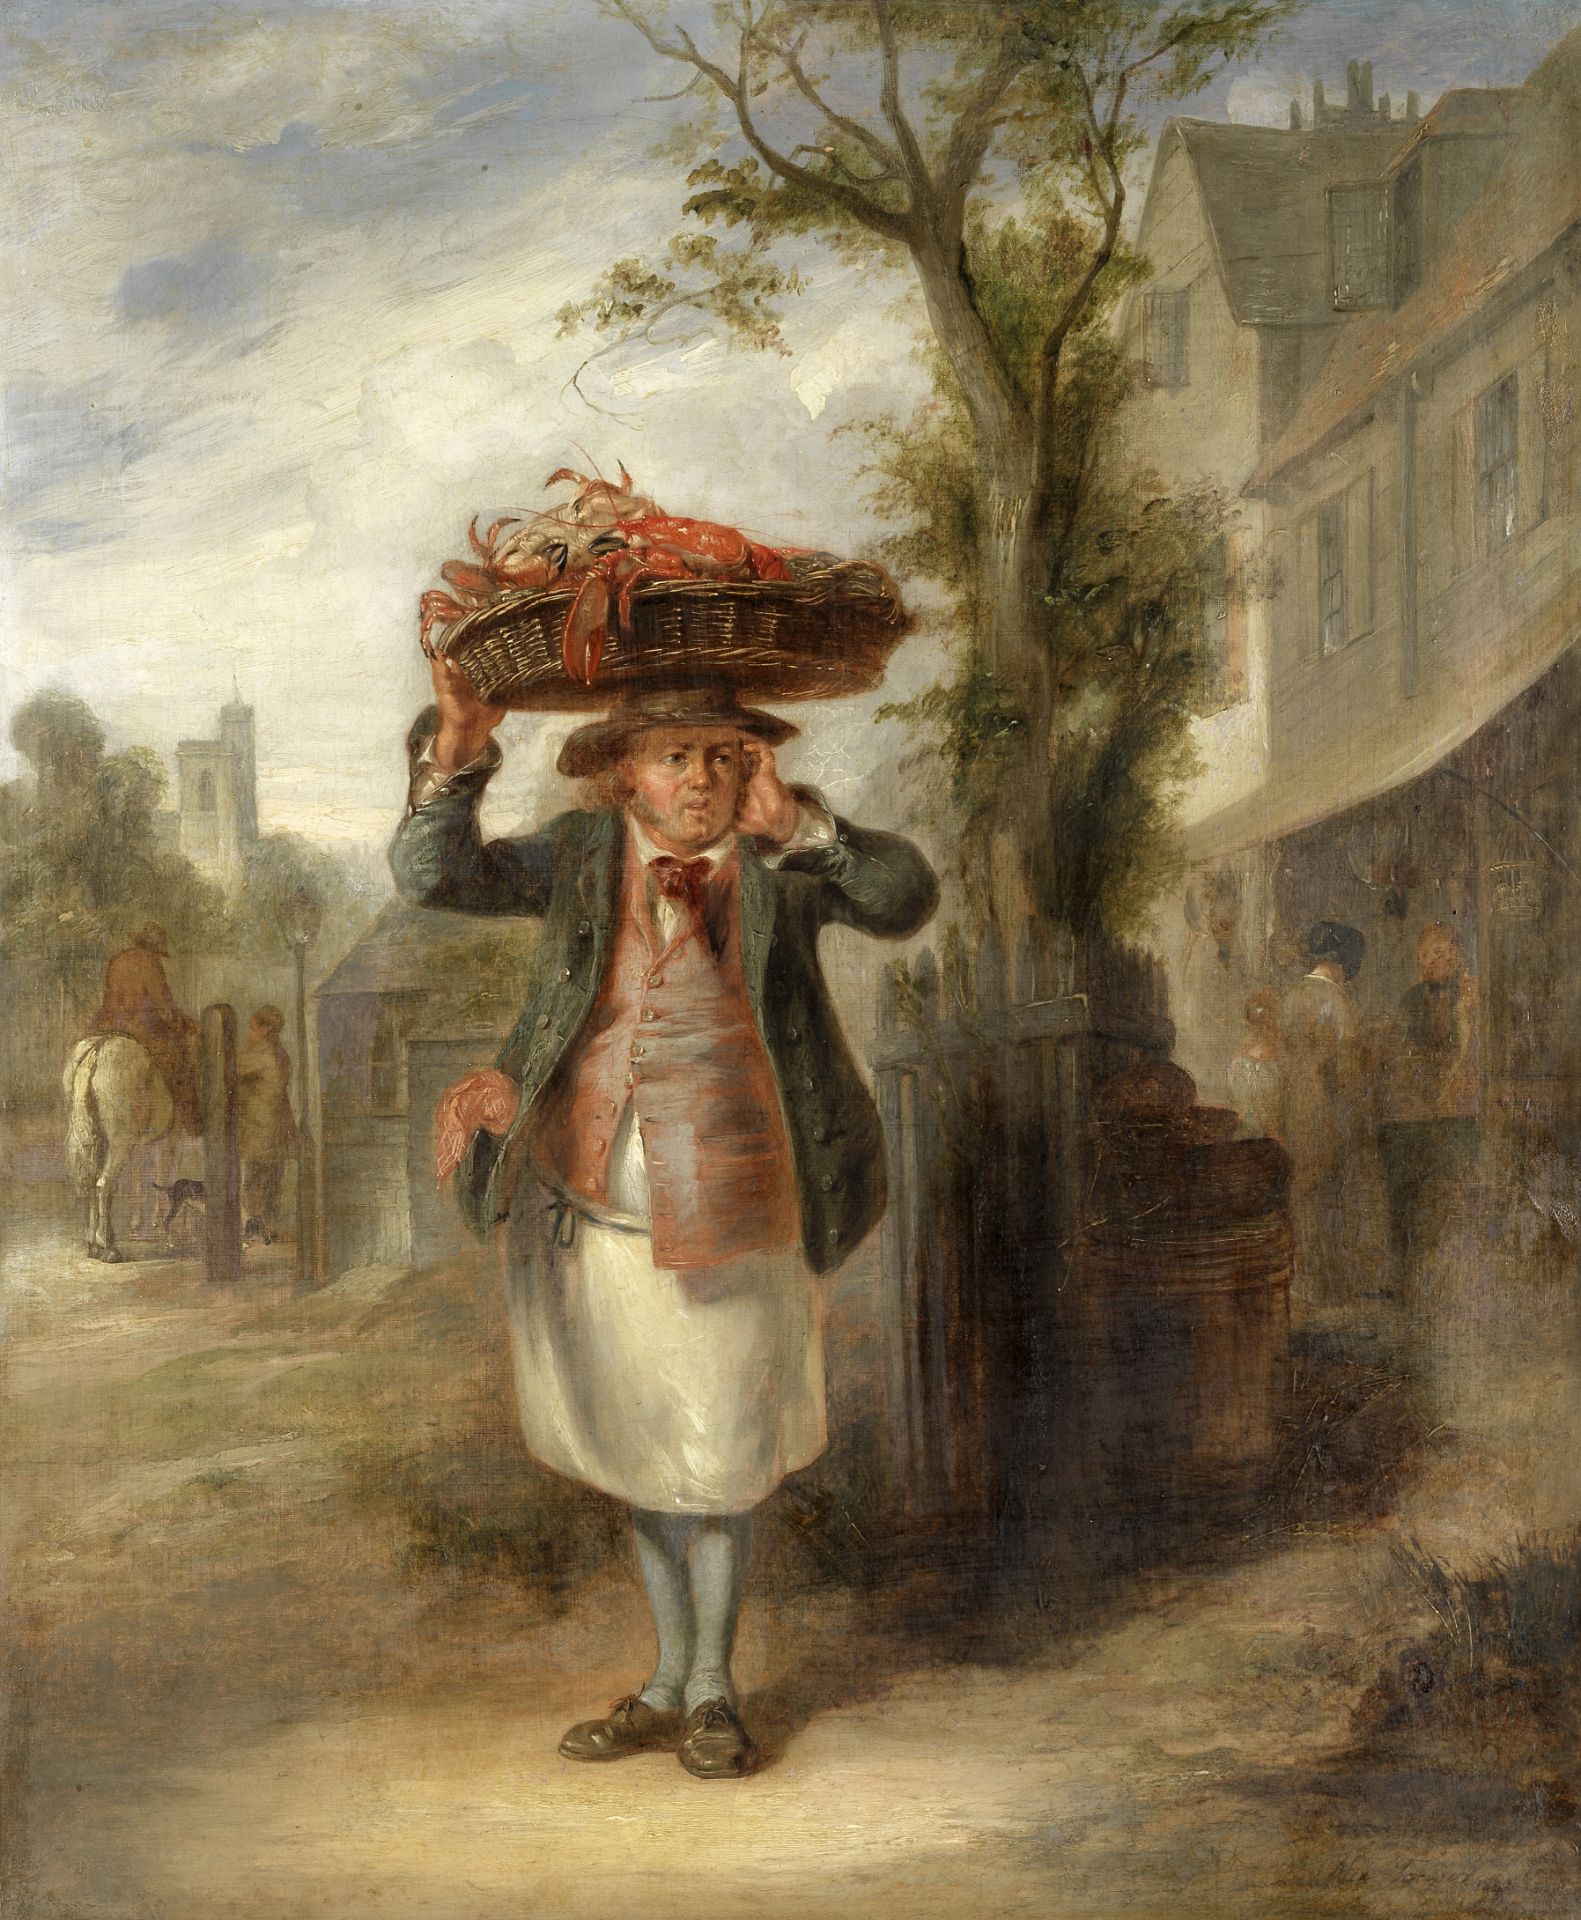 Alexander Fraser (British, 1786-1865) The lobster seller